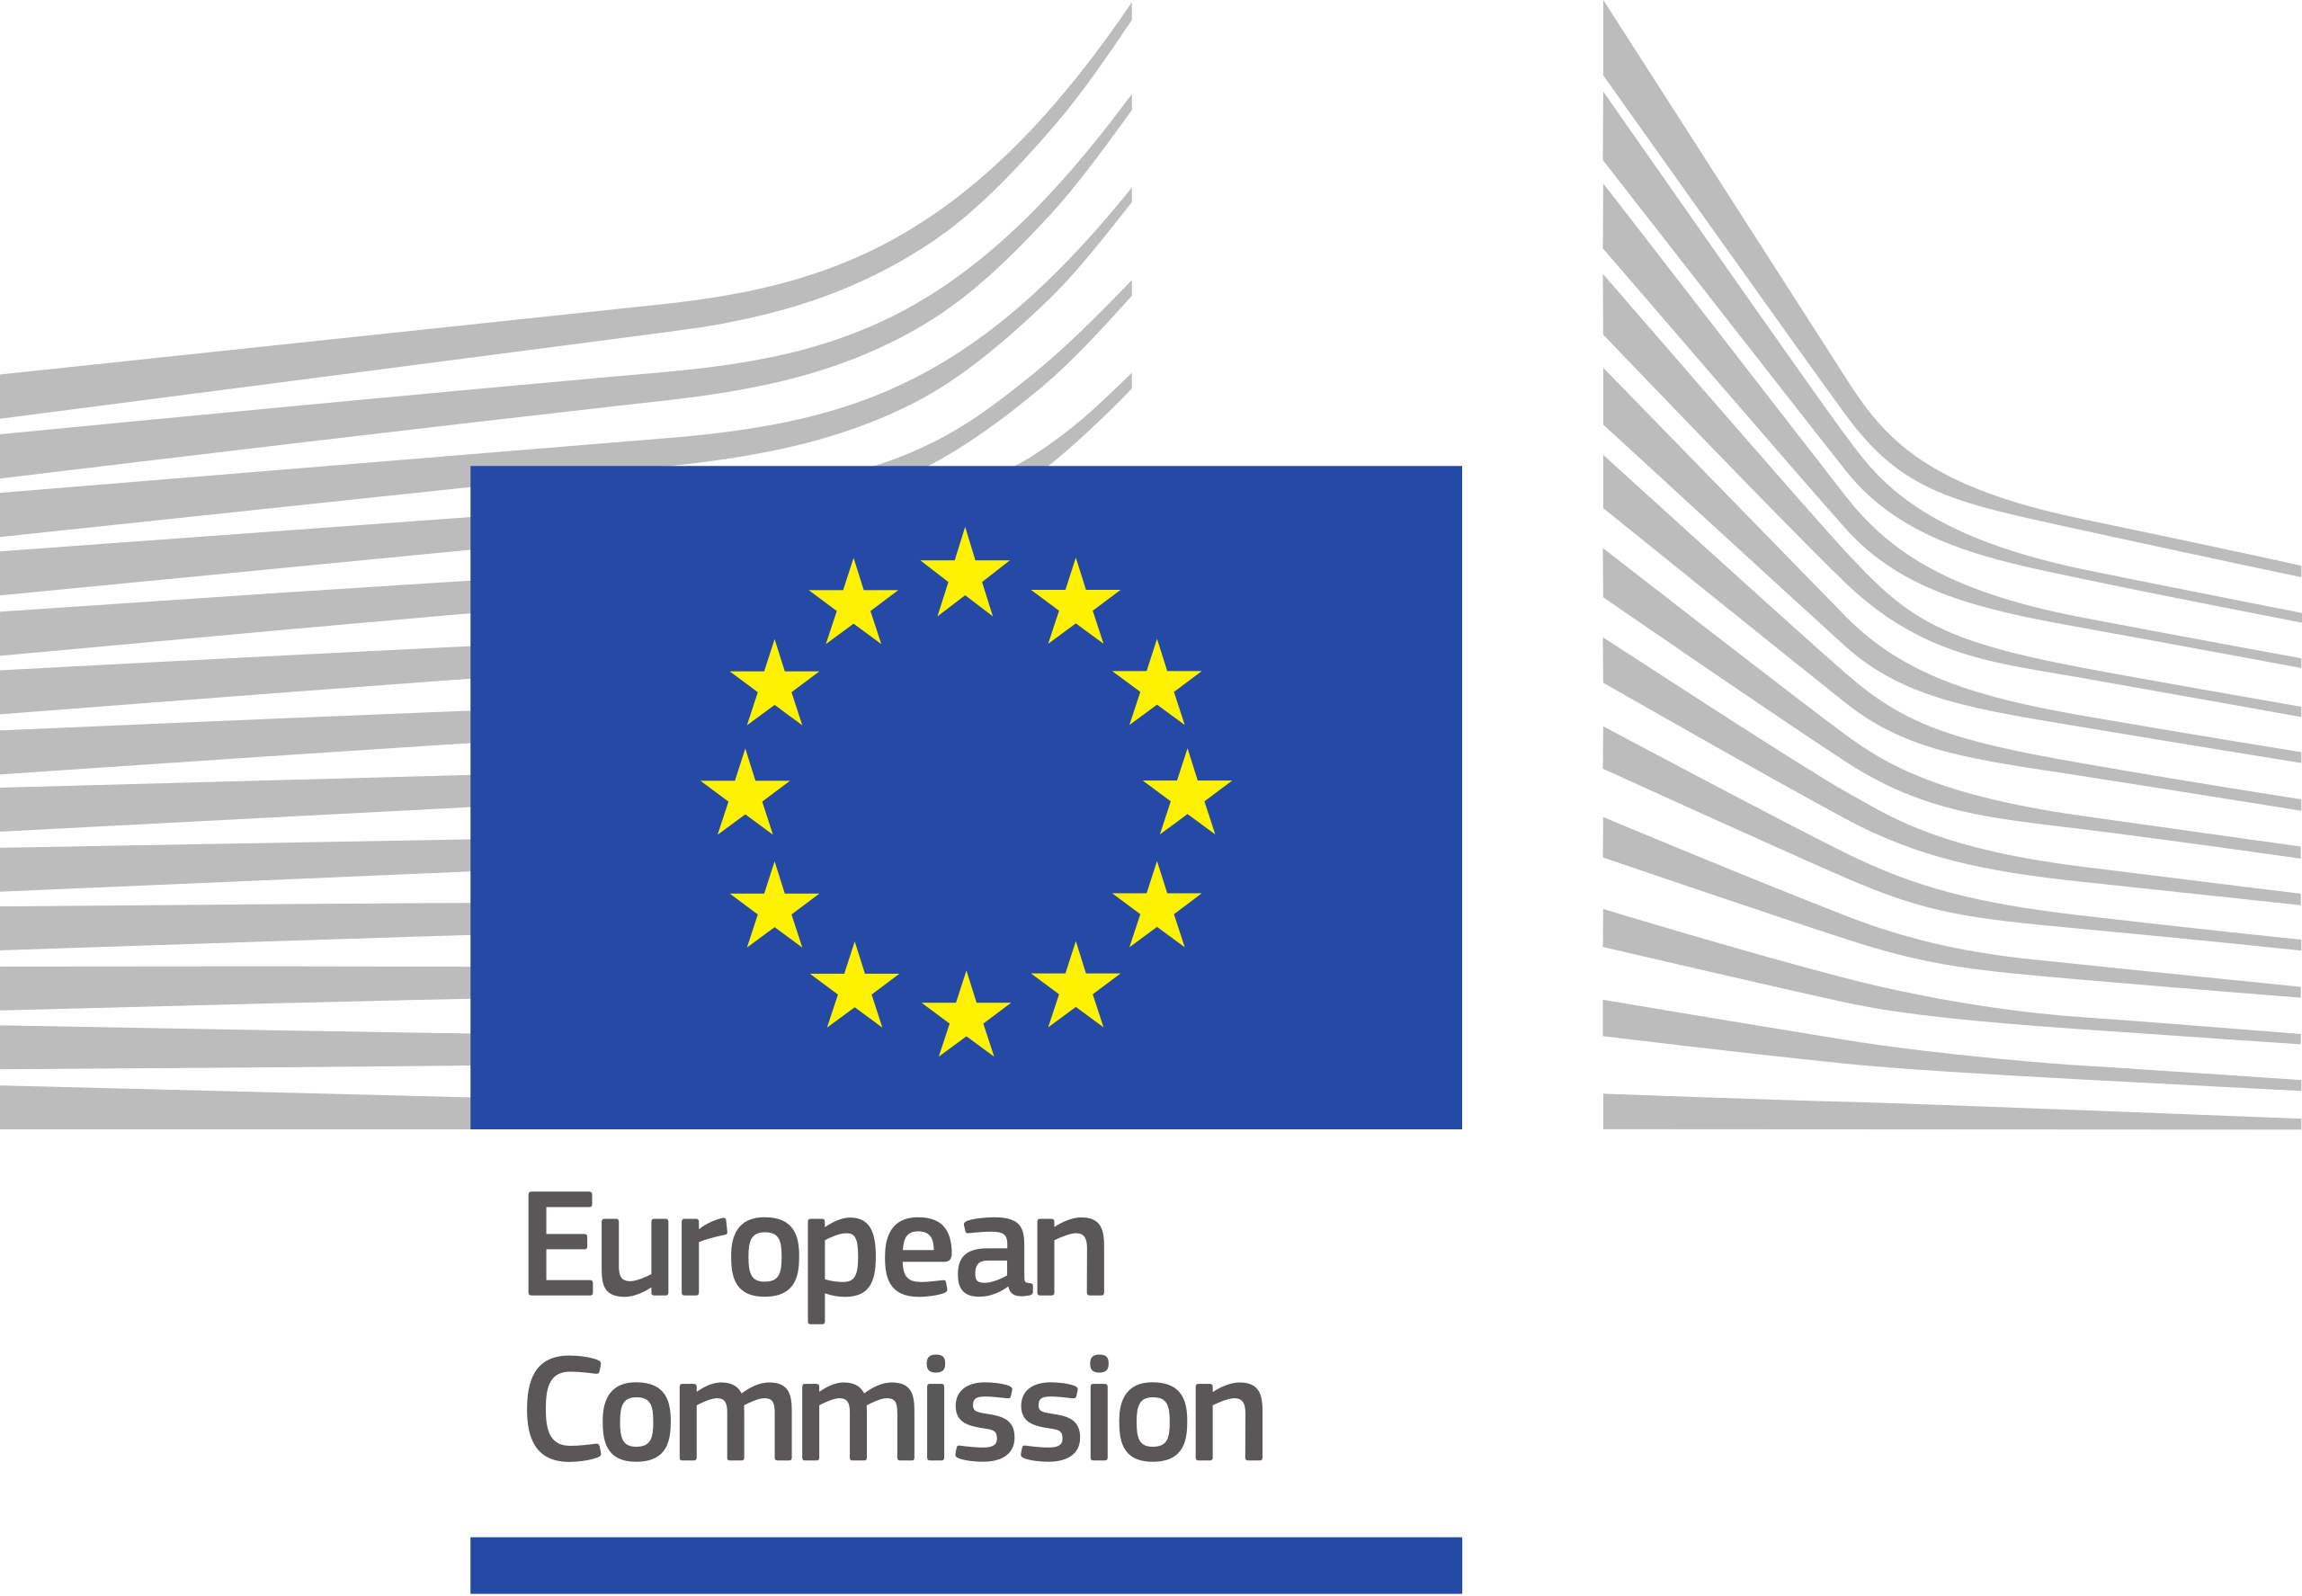 eforum member of european commission